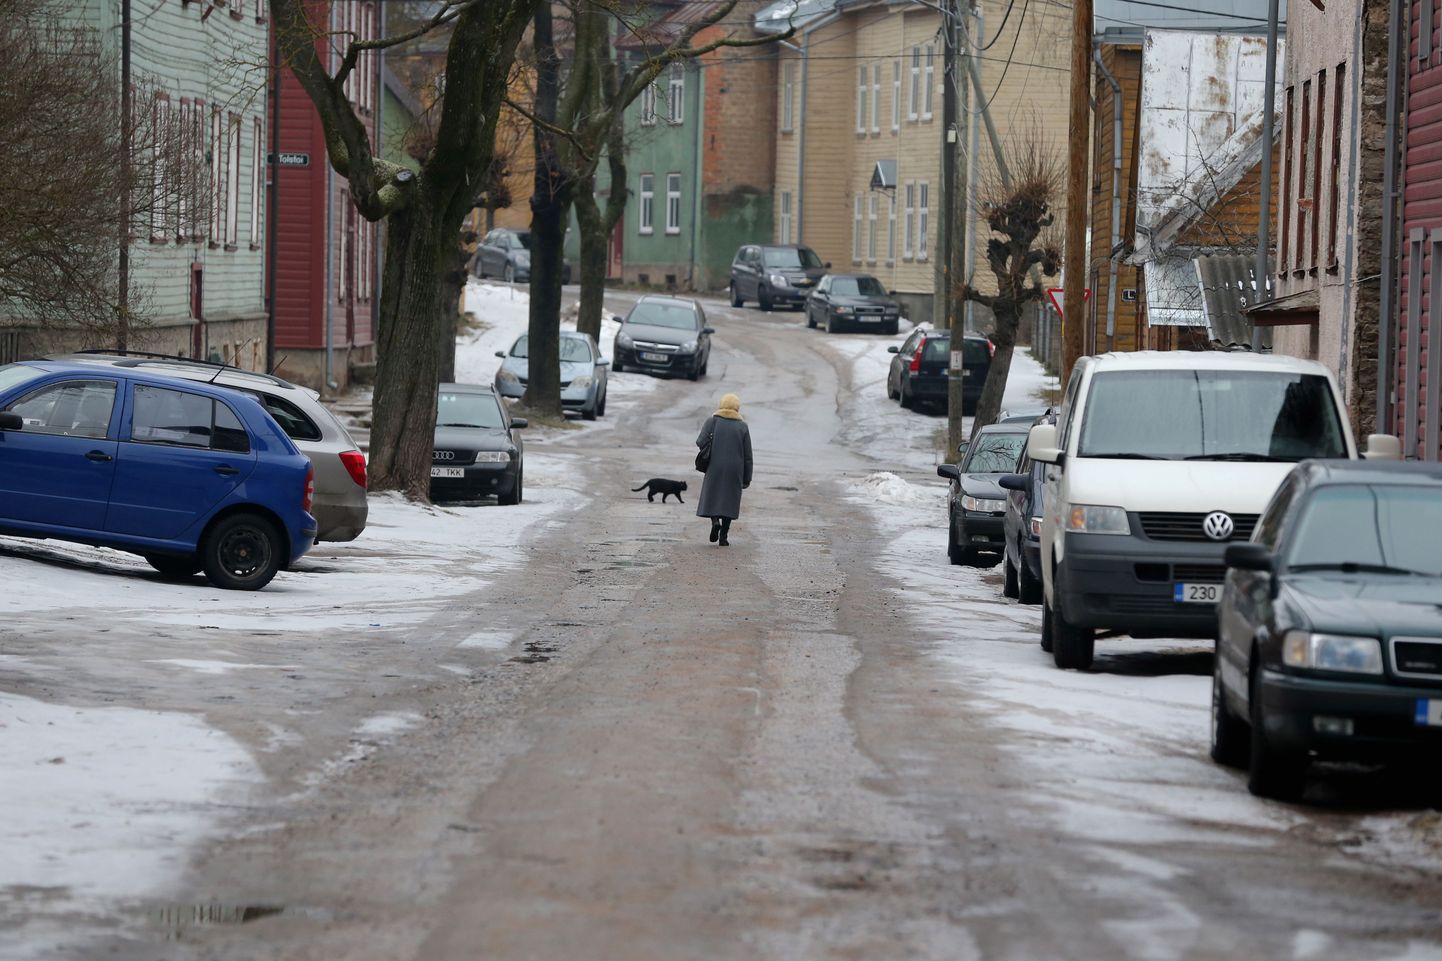 Karlovas liiguvad inimesed sõiduteedel, sest kõnniteed on liiga libedad.
Pildil Salme tänav.